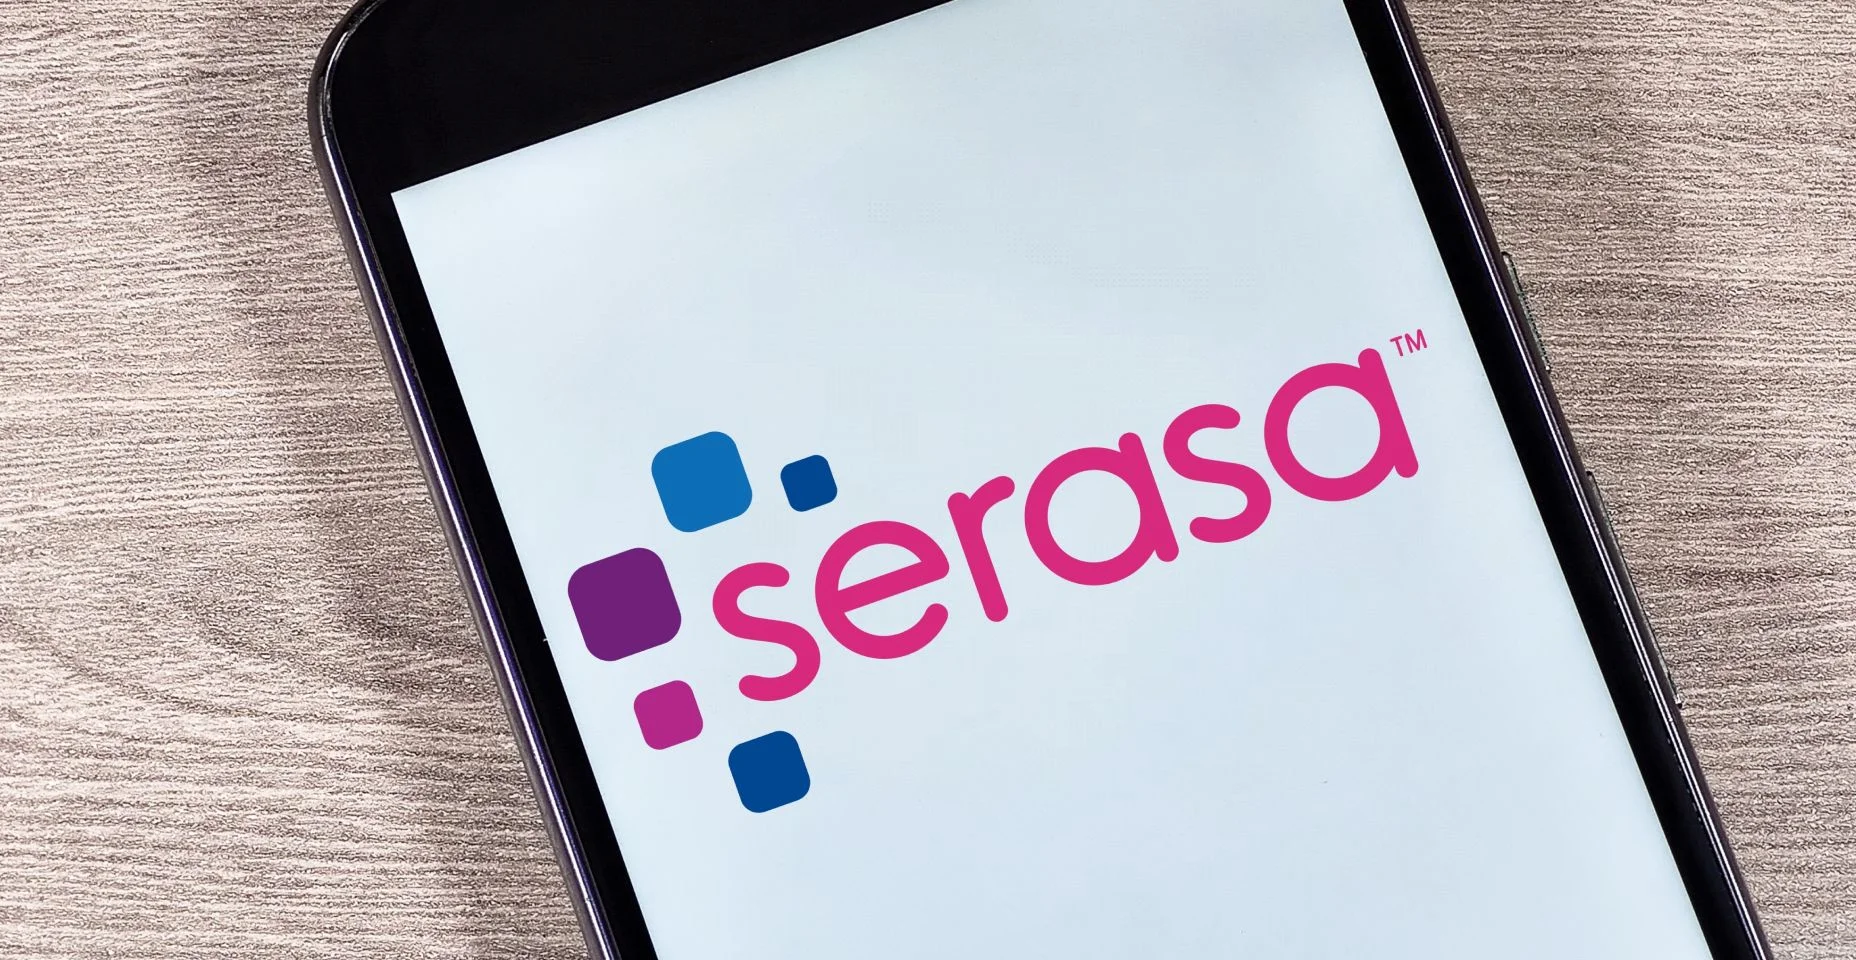 Logotipo da Serasa na tela do smartphone. Serasa é uma marca brasileira de análise e informação para decisões de crédito e suporte empresarial.